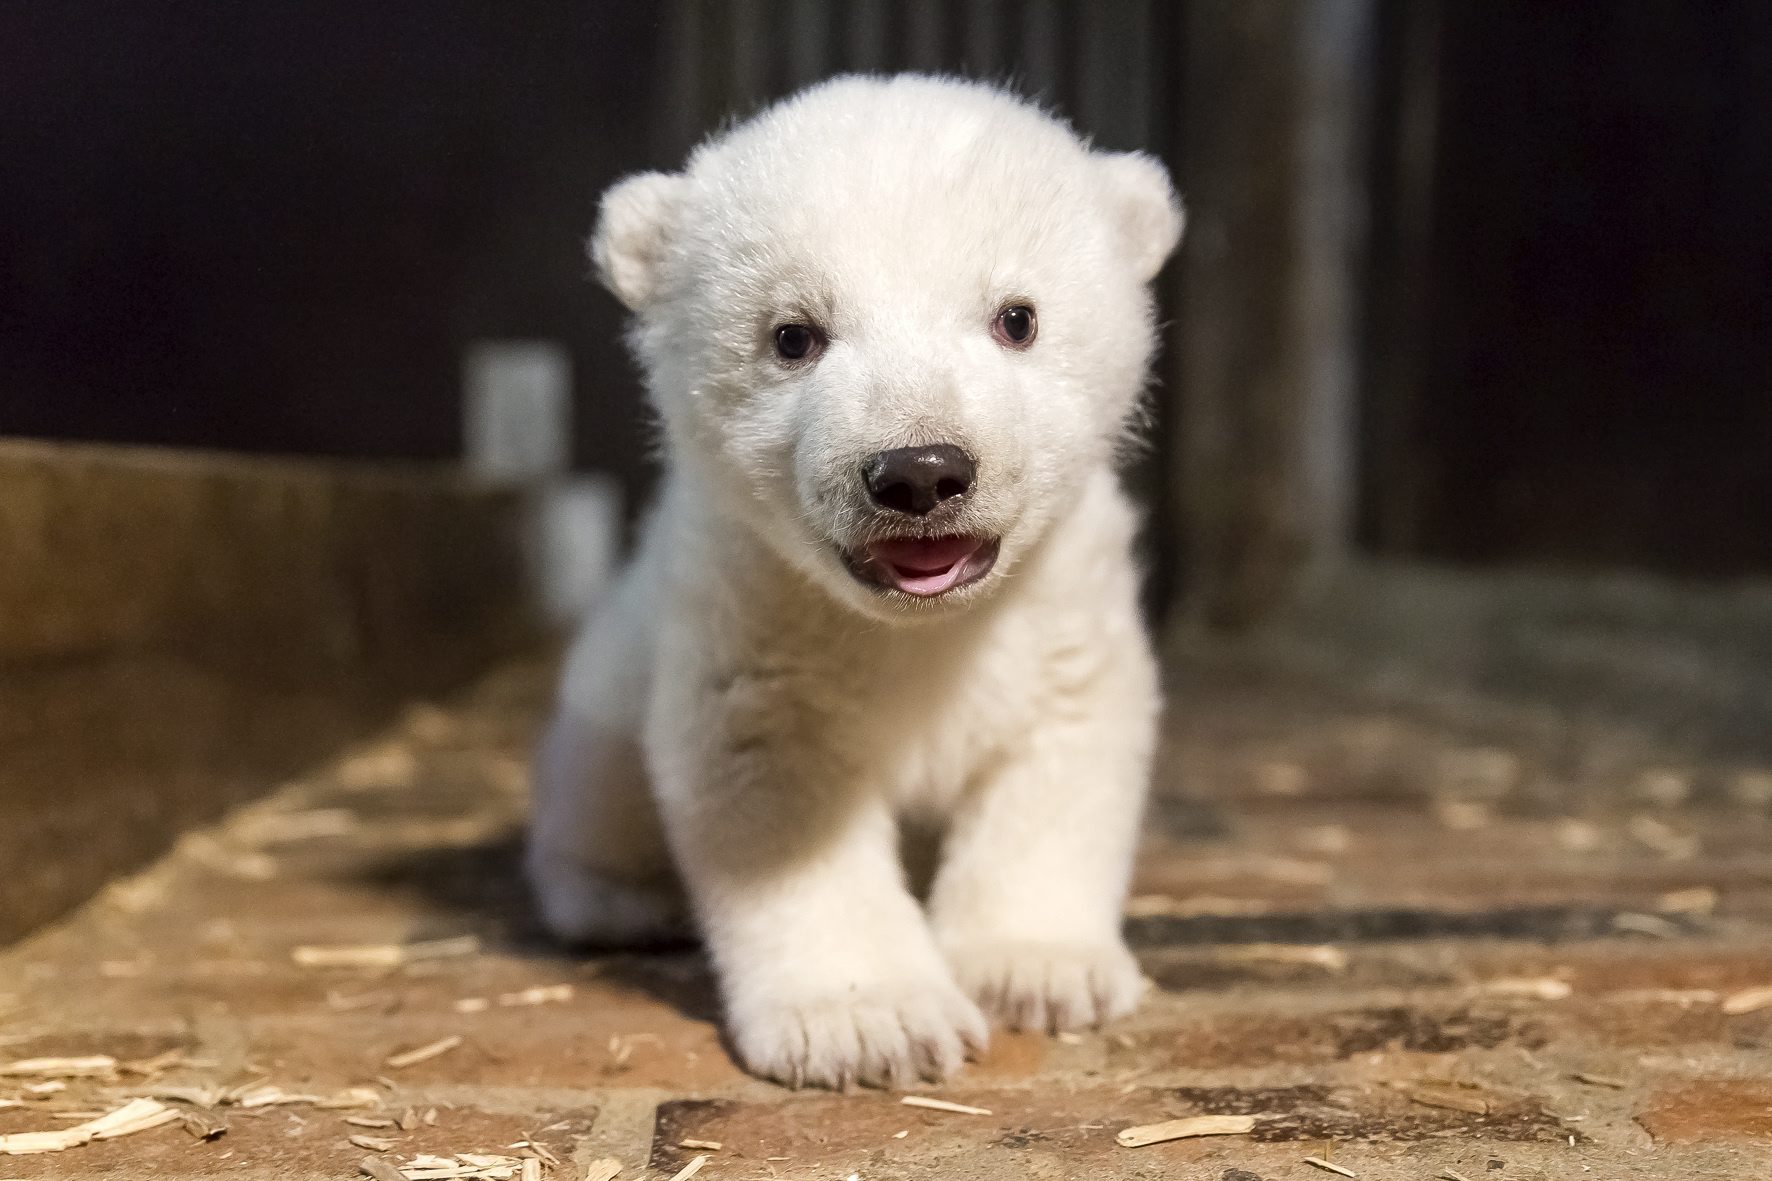 Niemcy: nowy mieszkaniec berlińskiego zoo - niedźwiedź polarny o imieniu Fritz (foto. PAP/EPA/TIERPARK BERLIN)